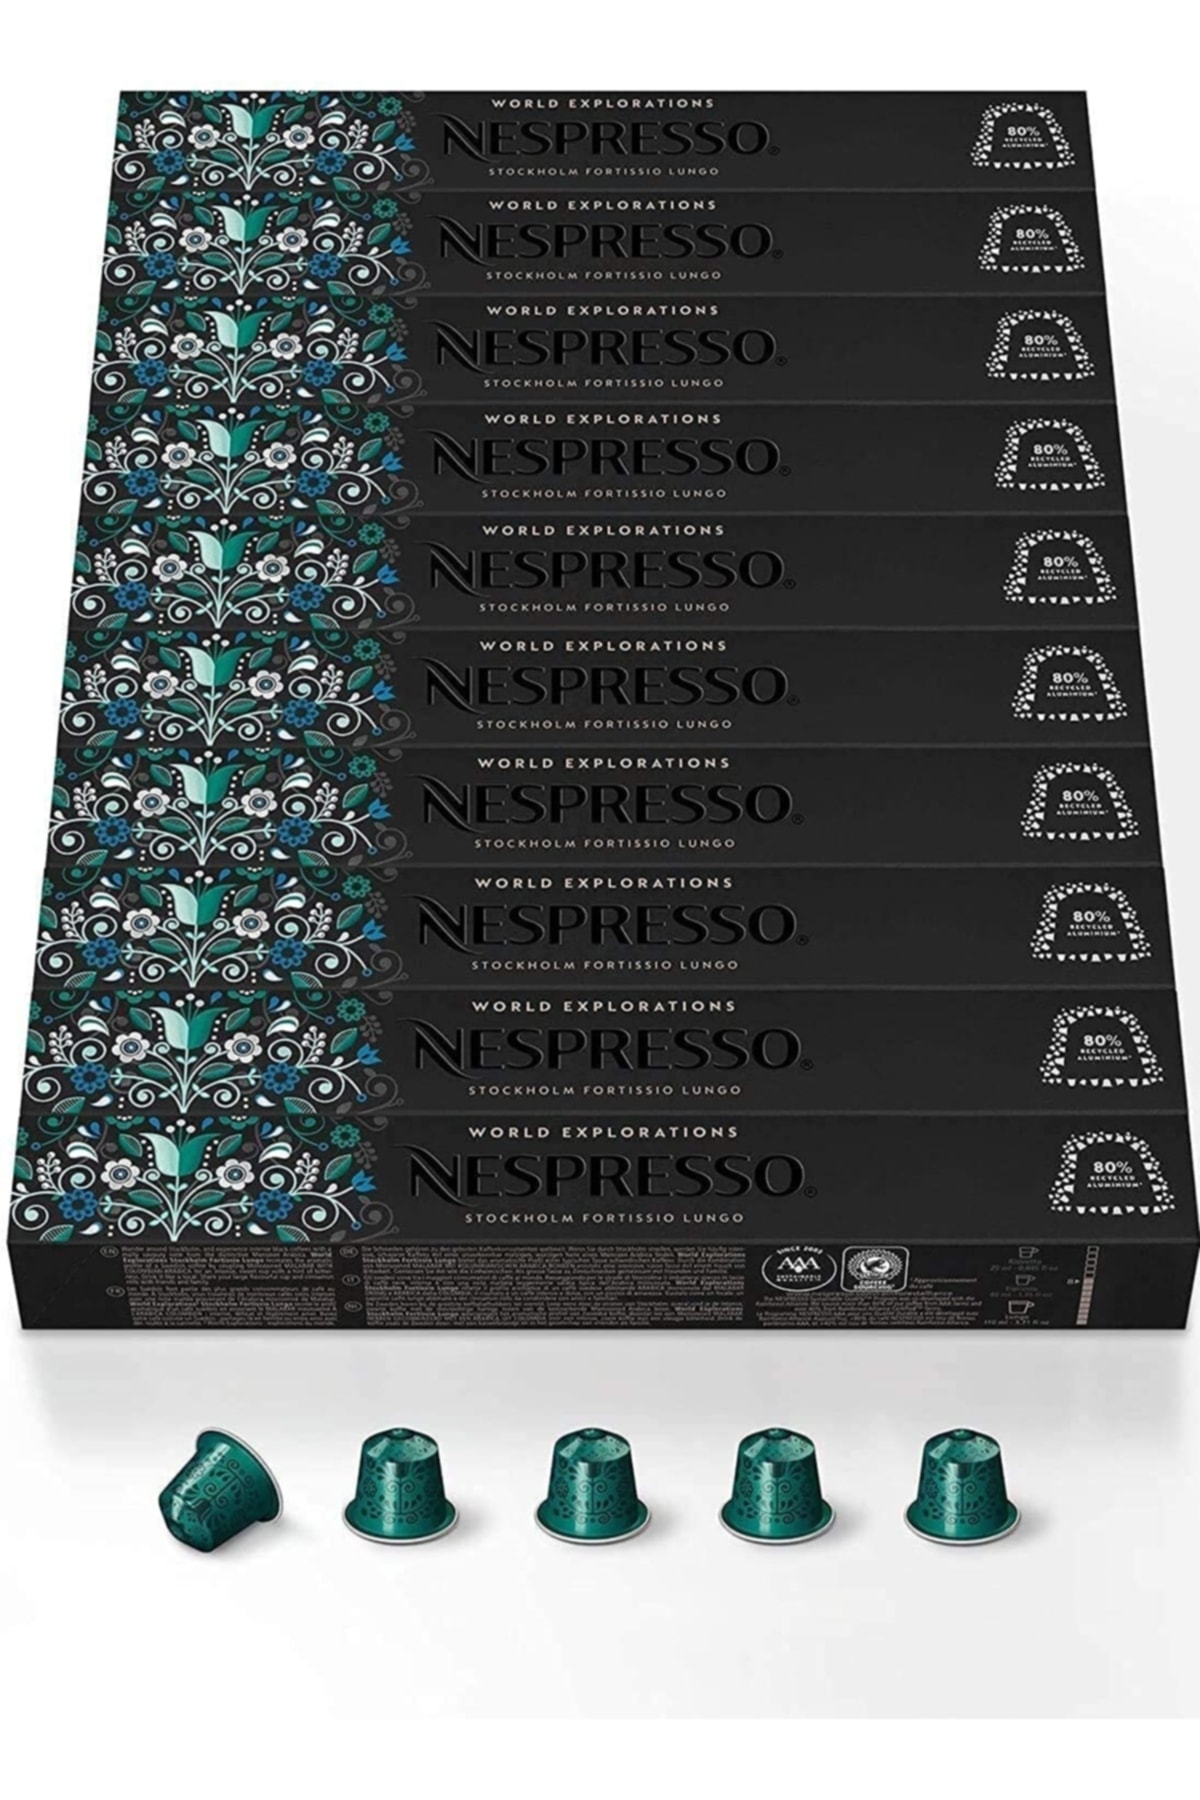 Nespresso Stockholm Fortissio Lungo 10 Kutu (100 Kapsül)